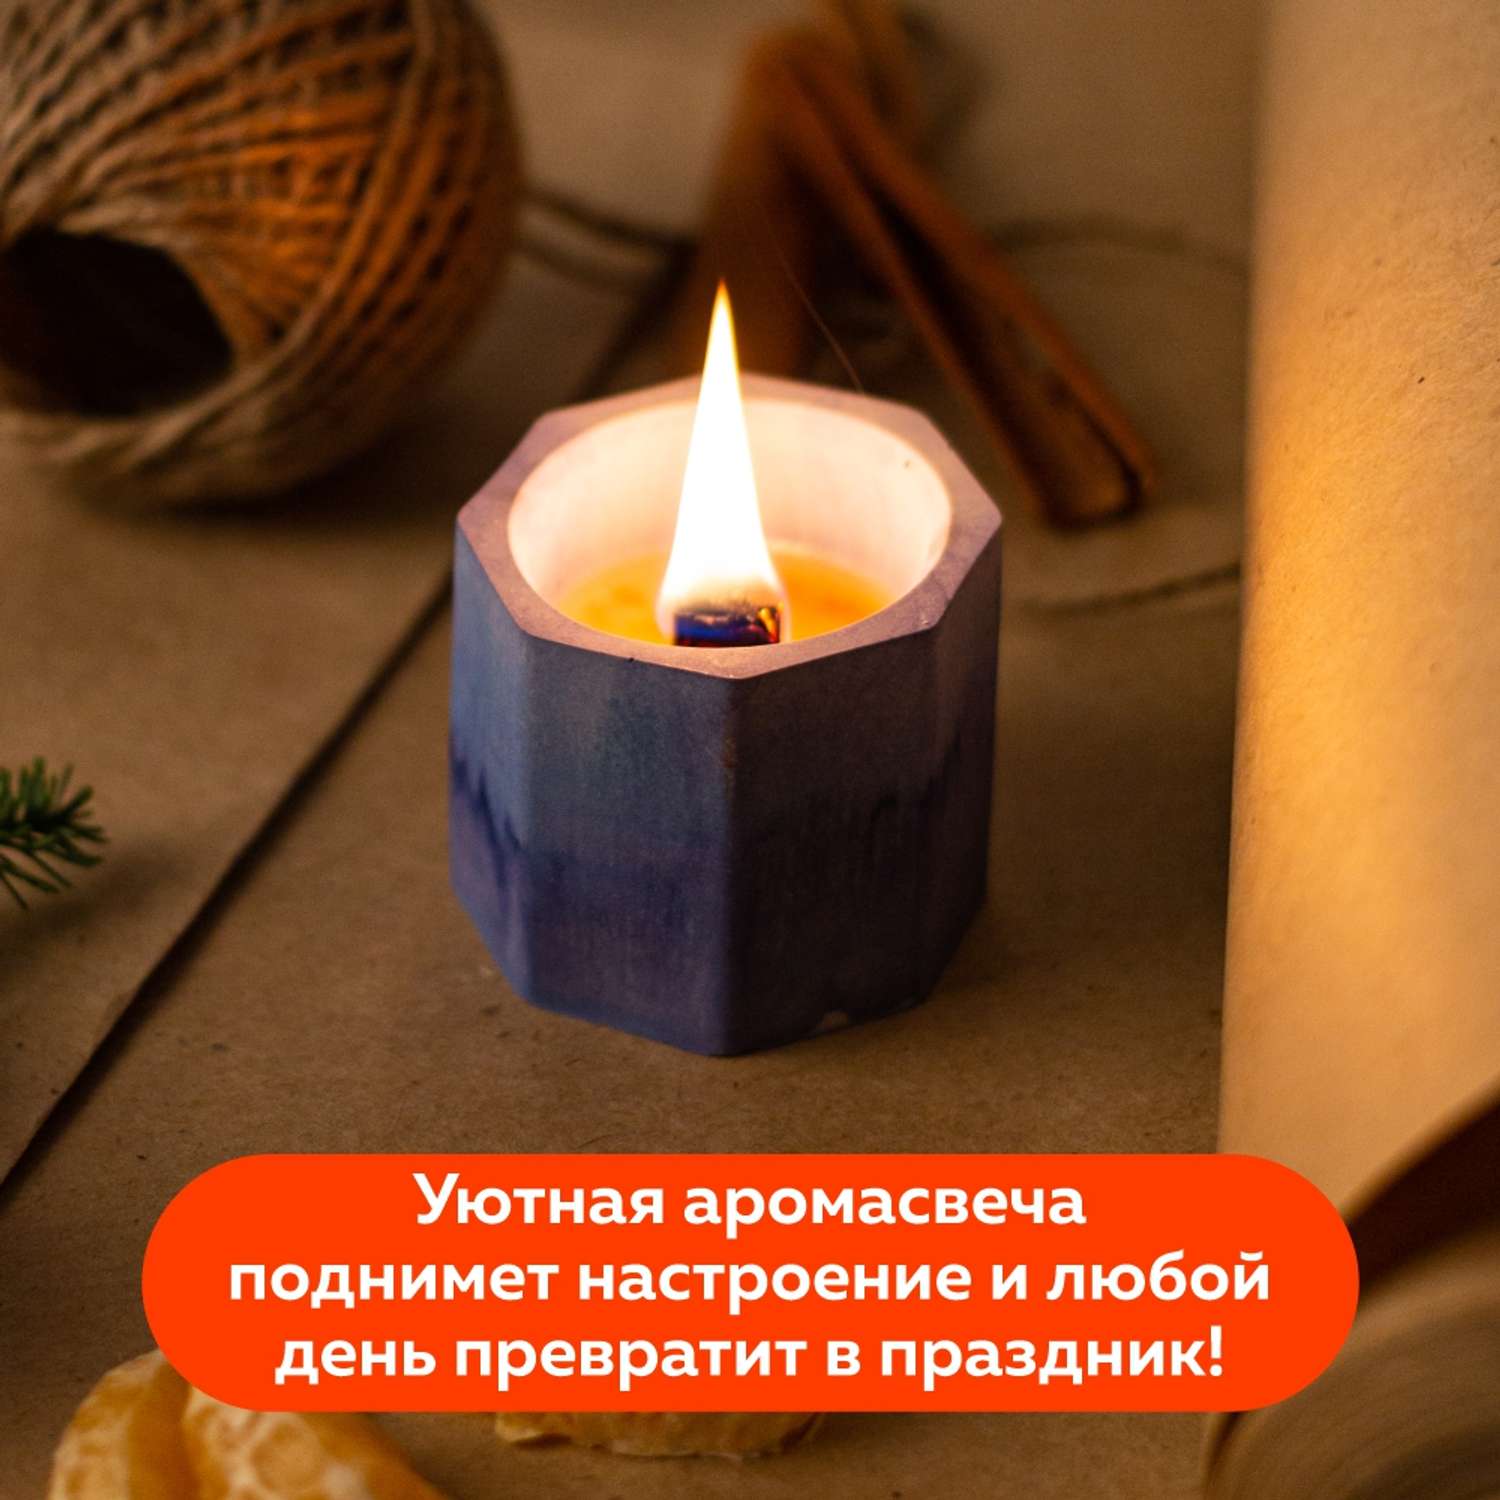 Набор для творчества Ebru Profi 01015 по созданию контейнерной свечи. Огненный феникс - фото 16